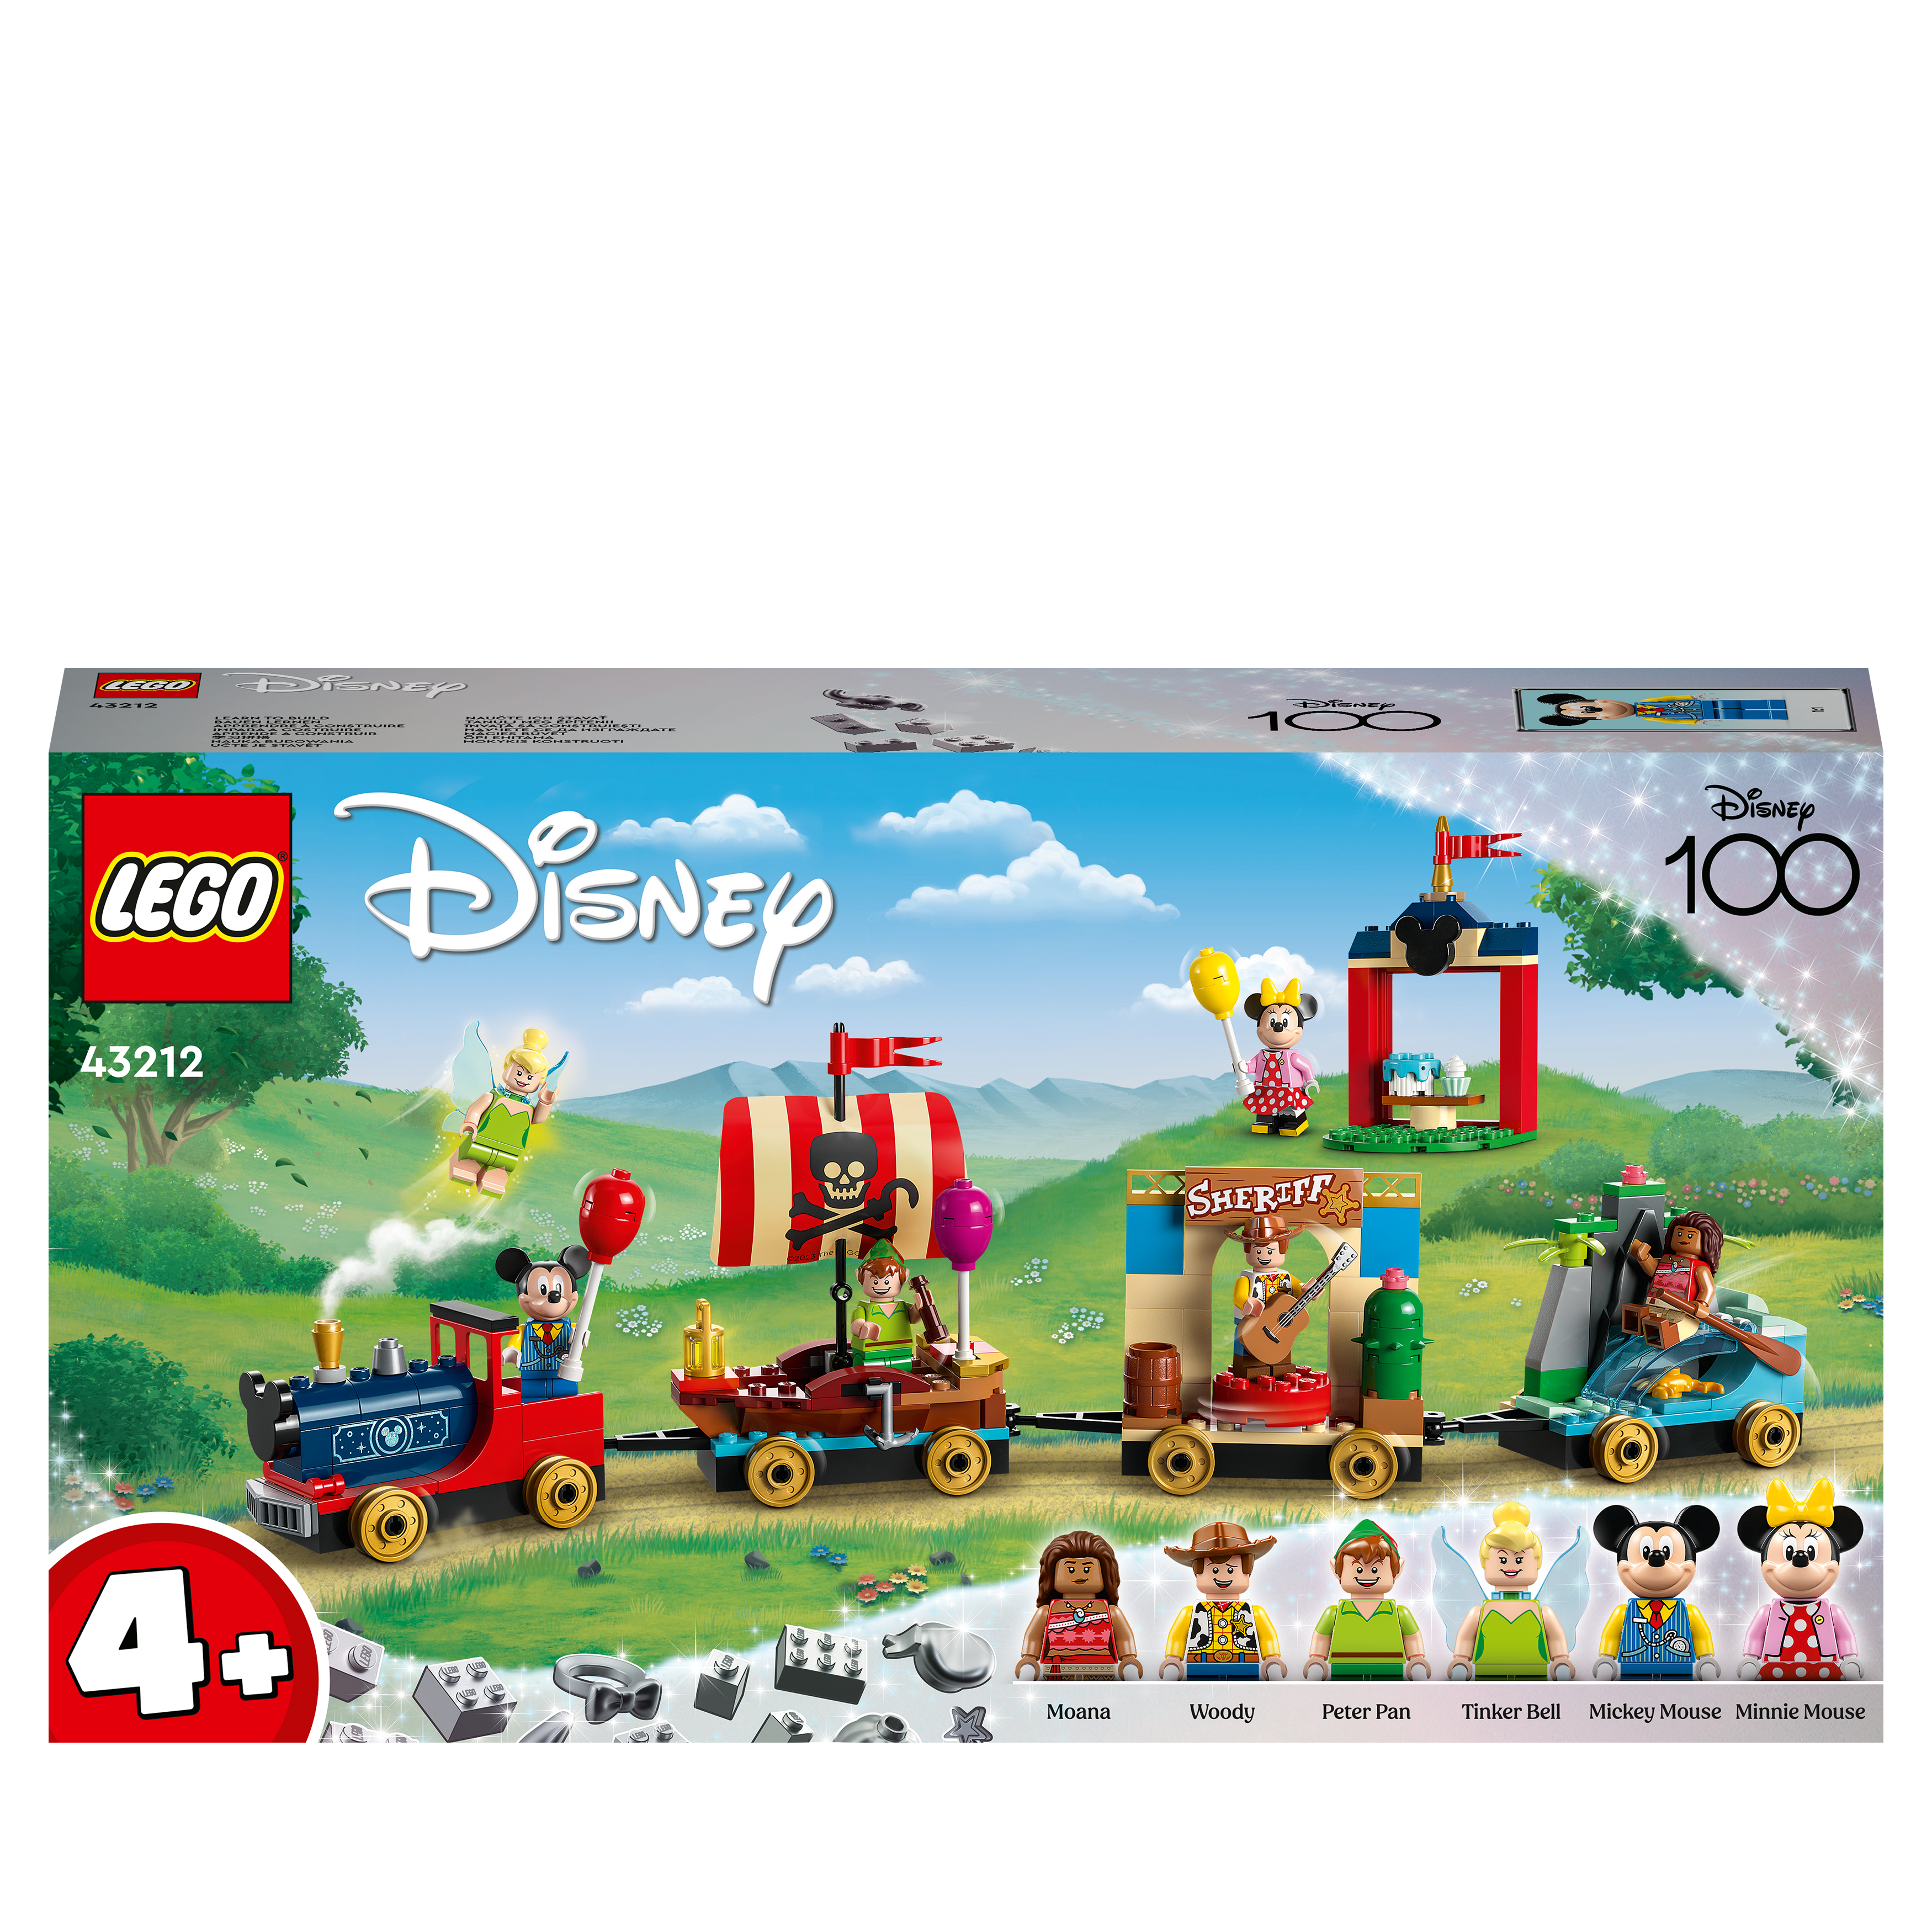 LEGO DUPLO Disney Pixar Toy Story Train 10894 Toddler Train Set 